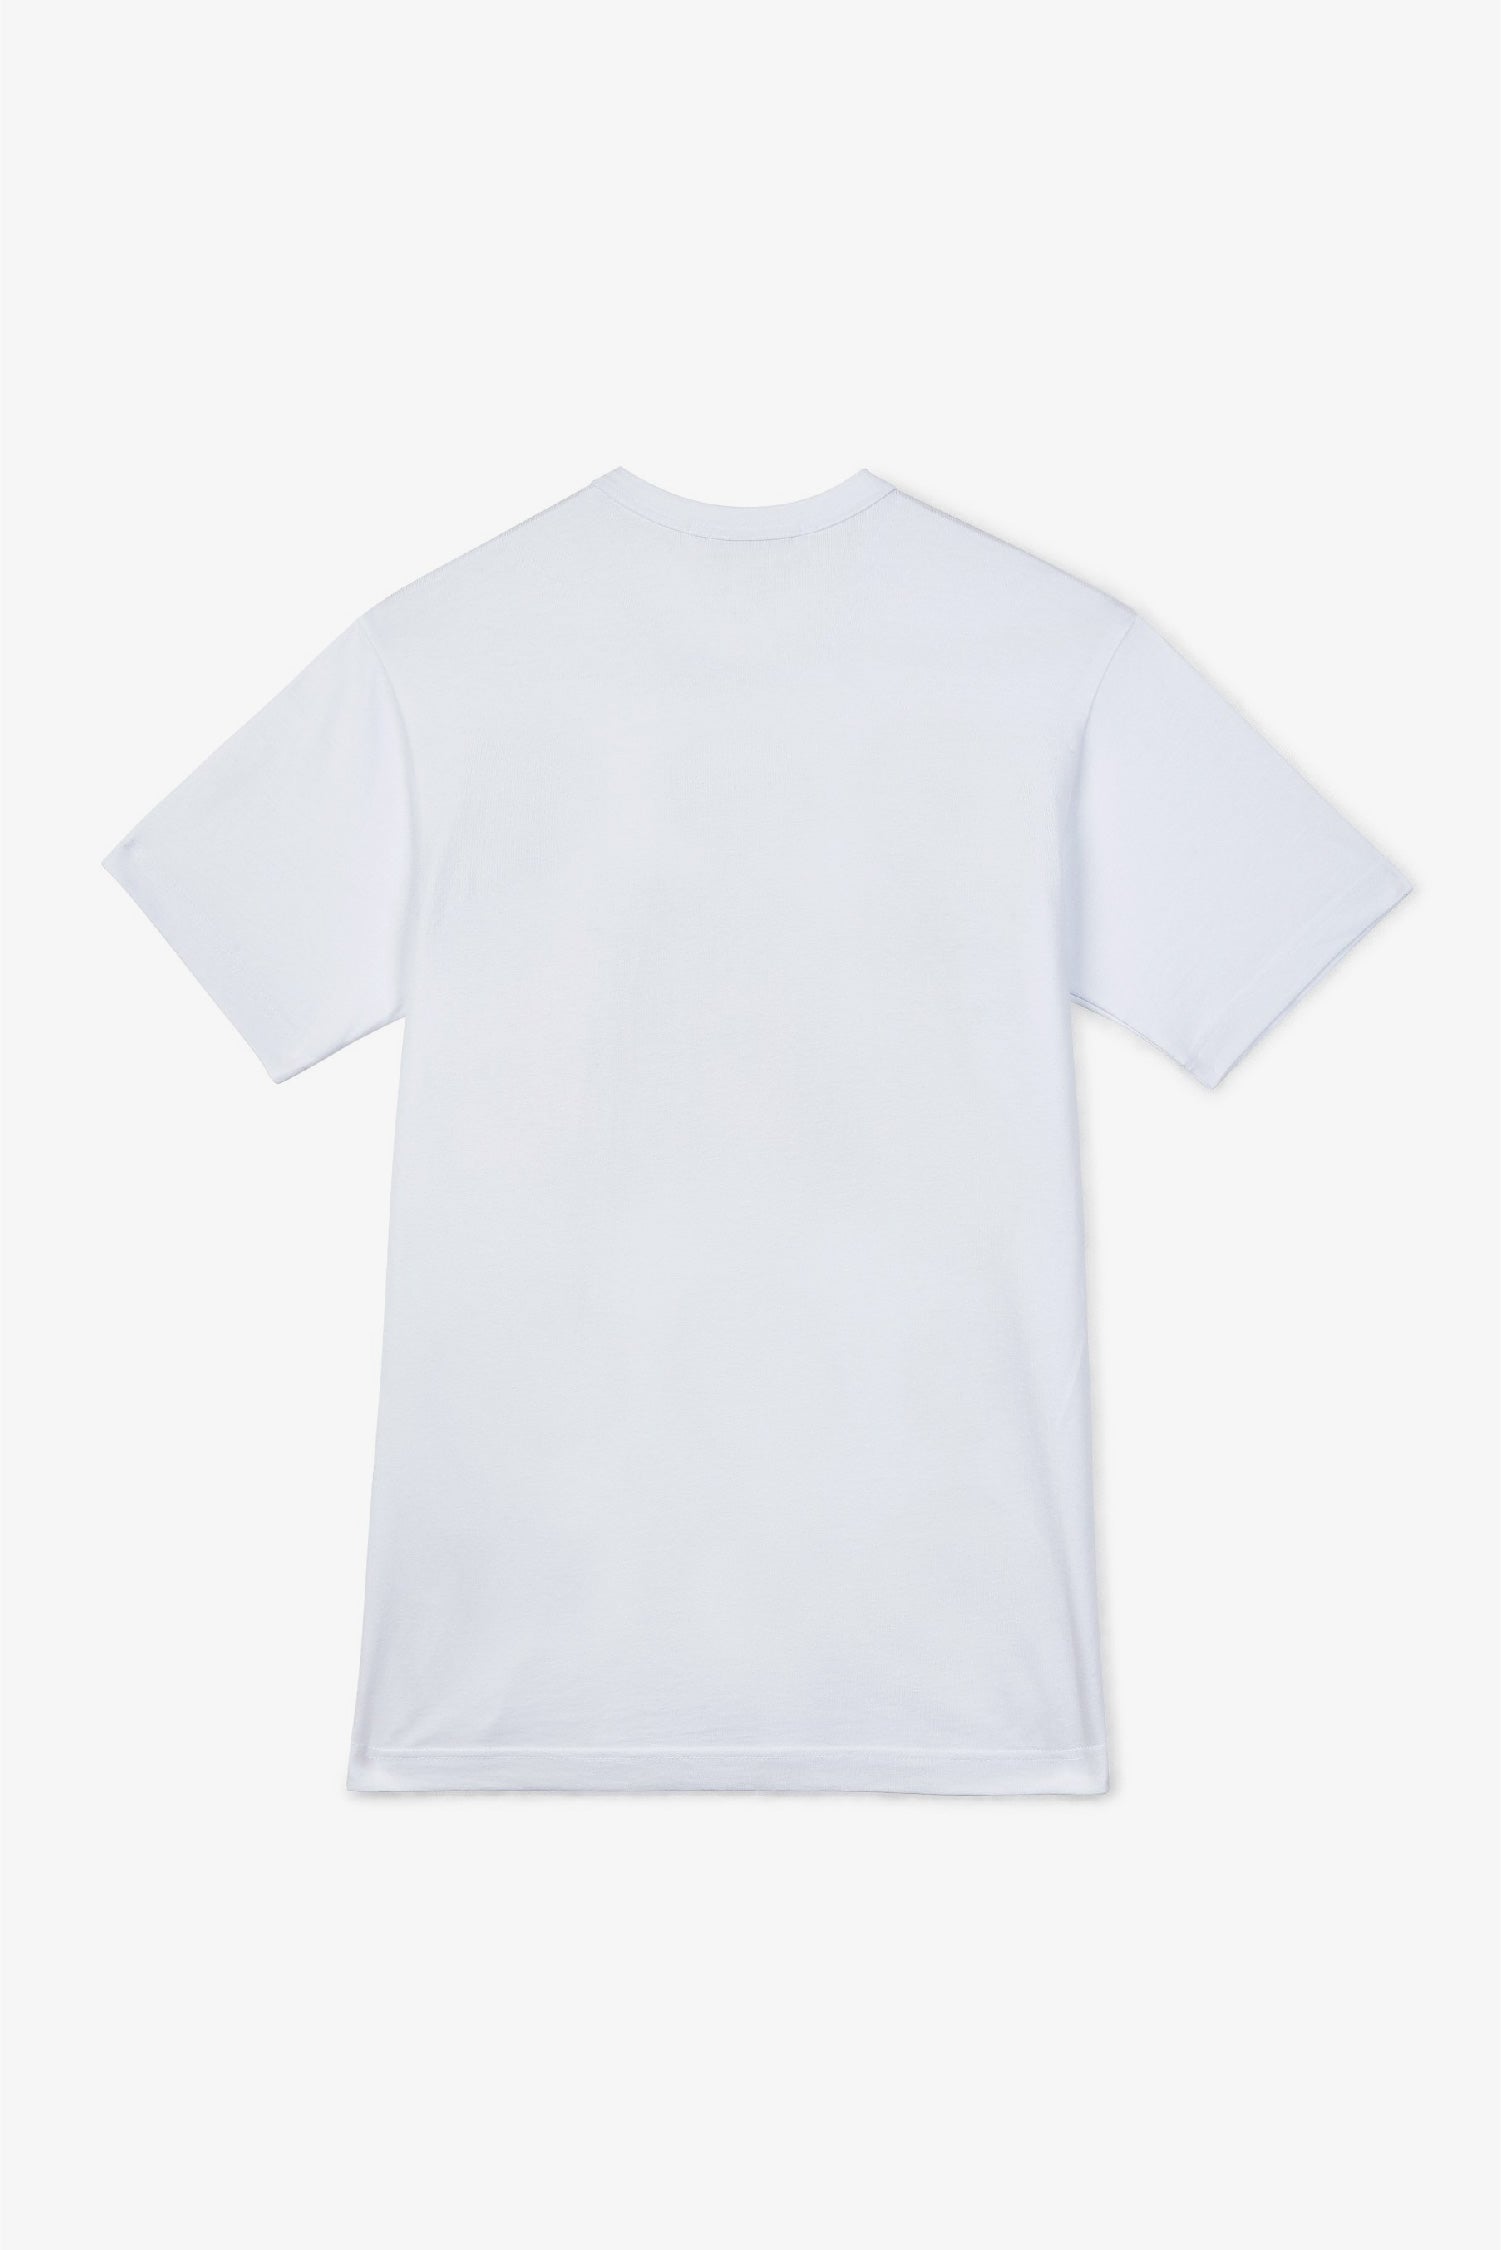 Selectshop FRAME - COMME DES GARCONS SHIRT KAWS T-Shirt T-Shirts Dubai